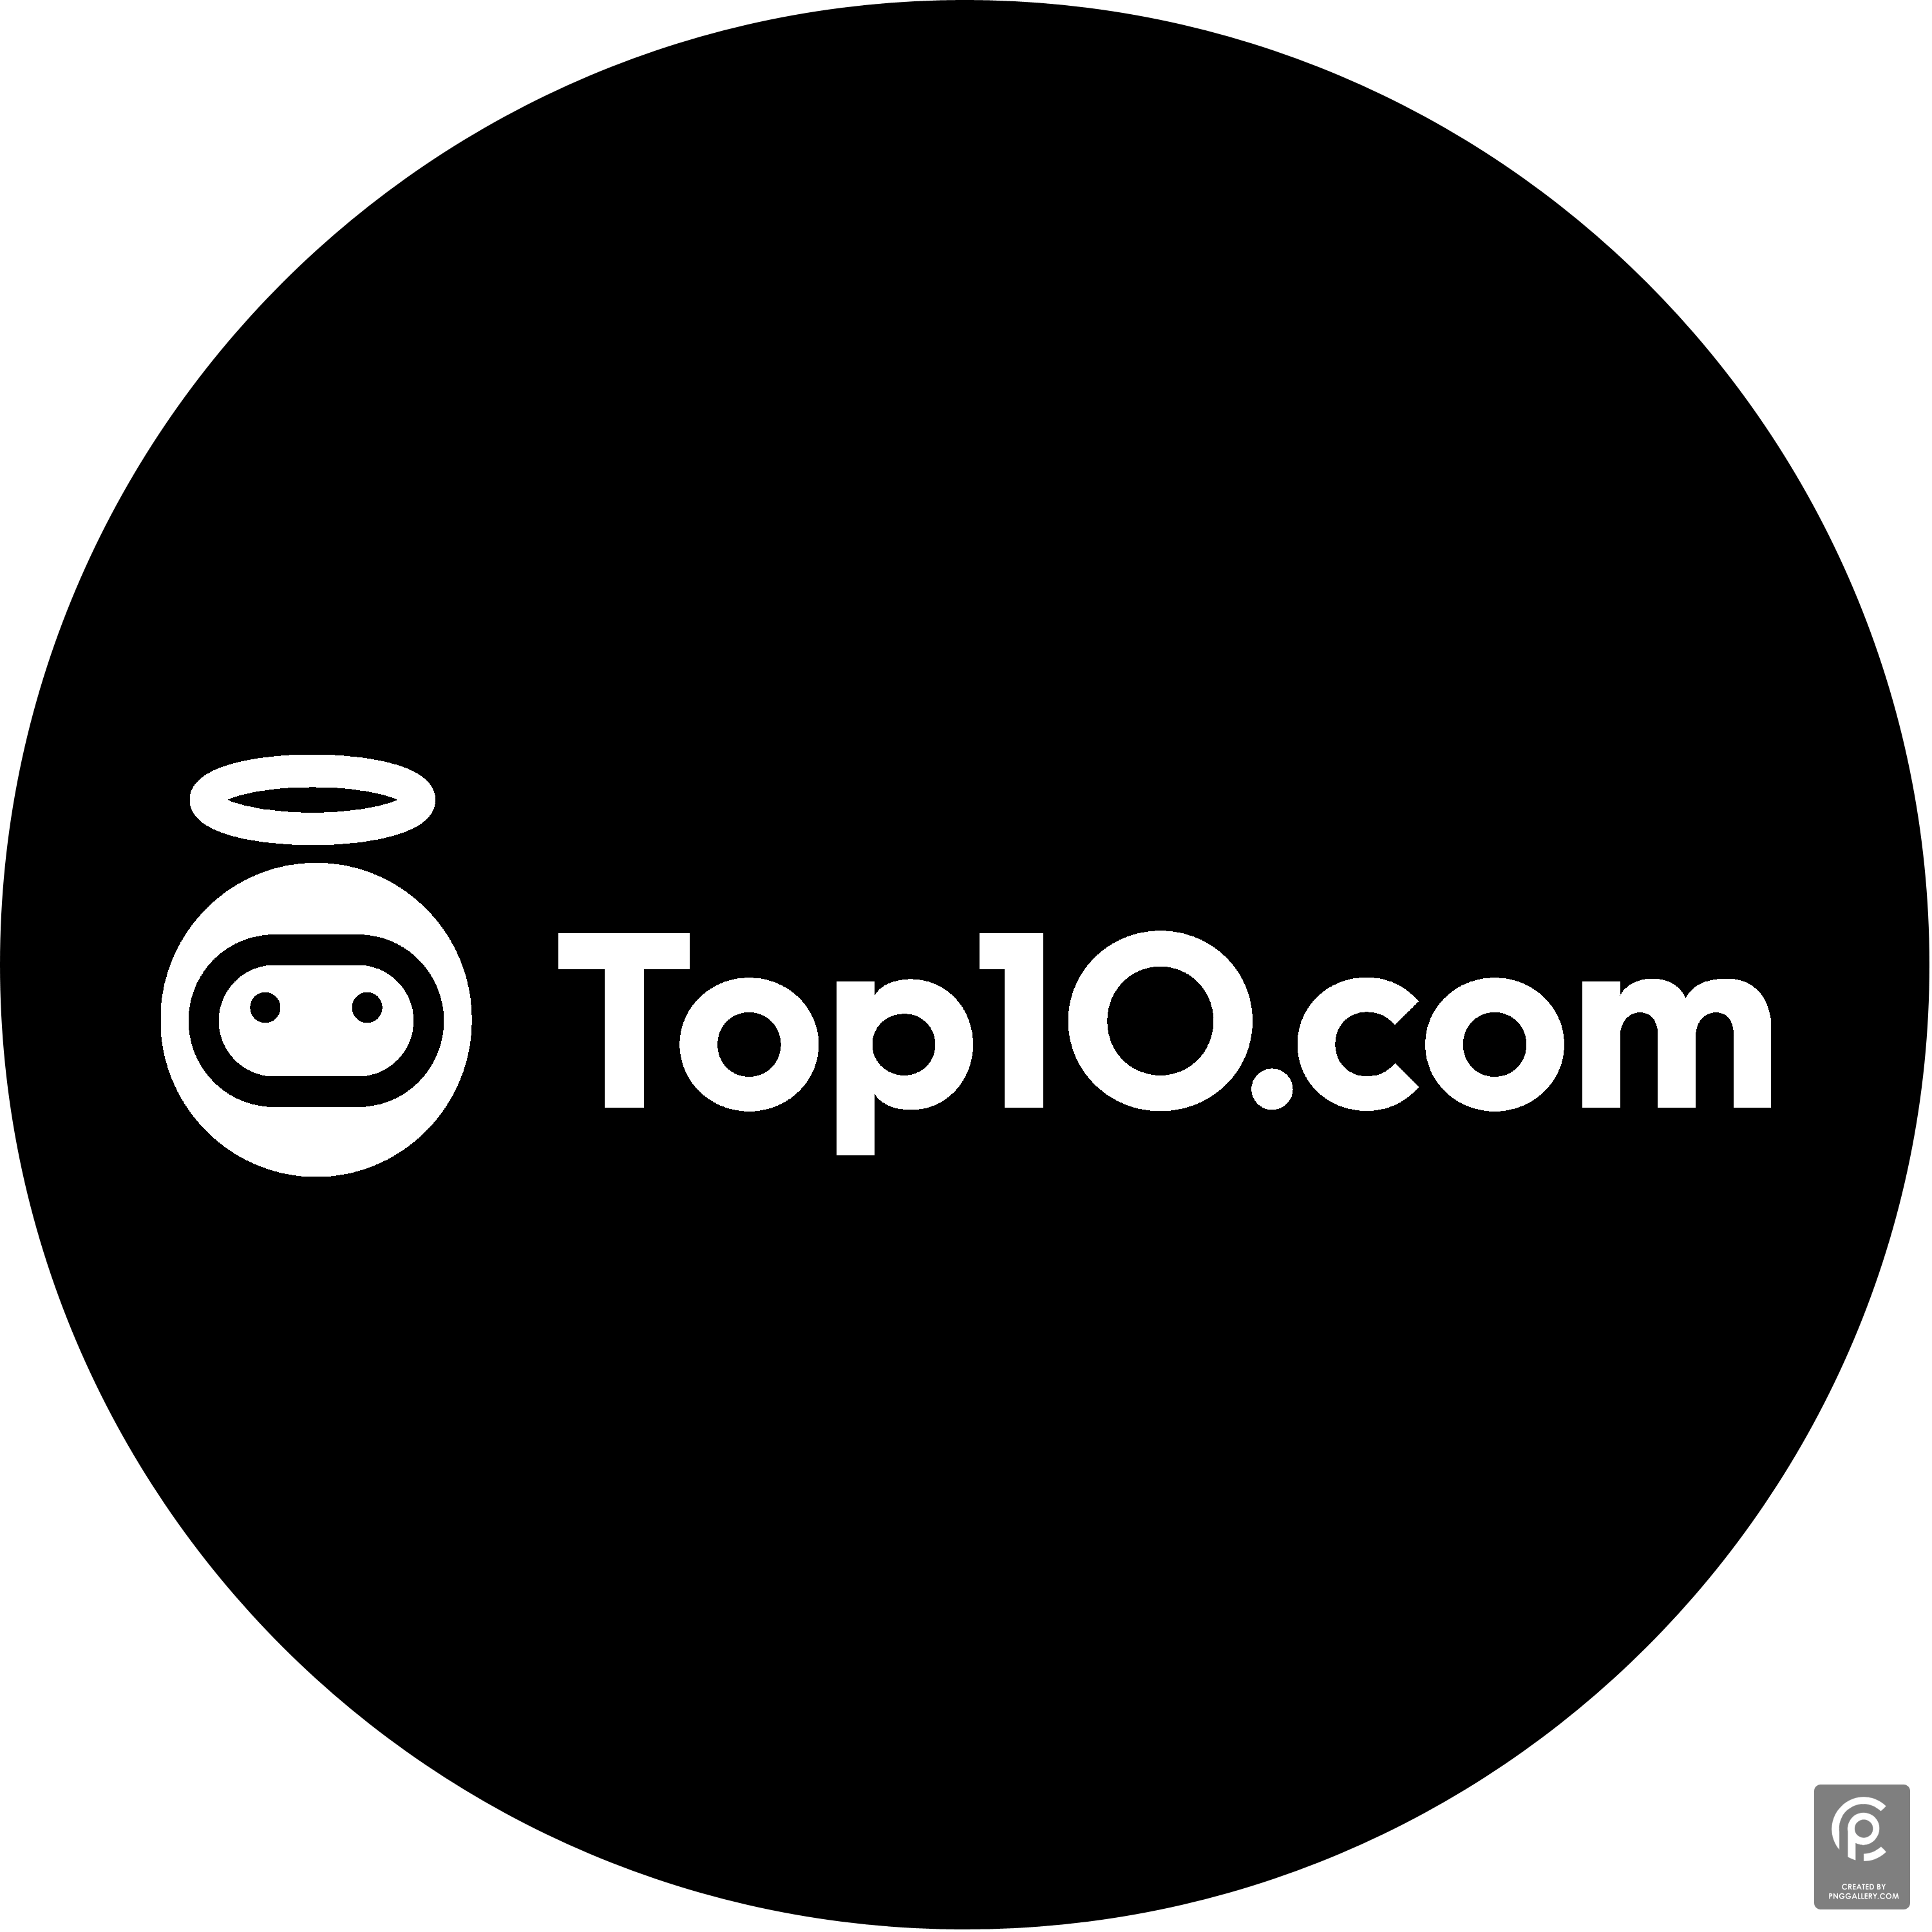 Top10.com Logo Transparent Clipart